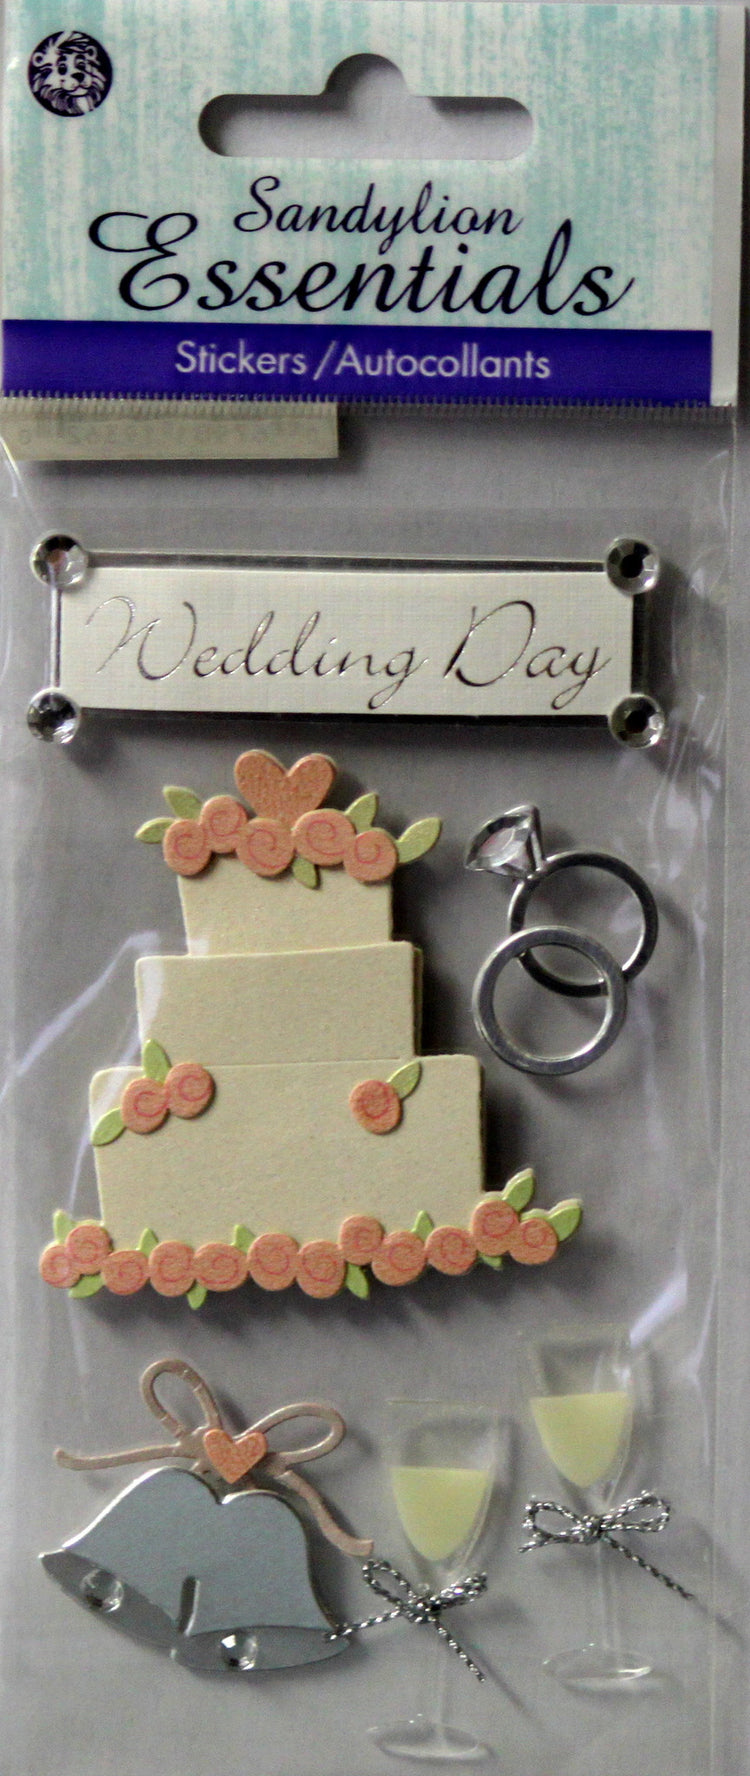 Sandylion Essentials Wedding Cake Dimensional Scrapbook Stickers - SCRAPBOOKFARE